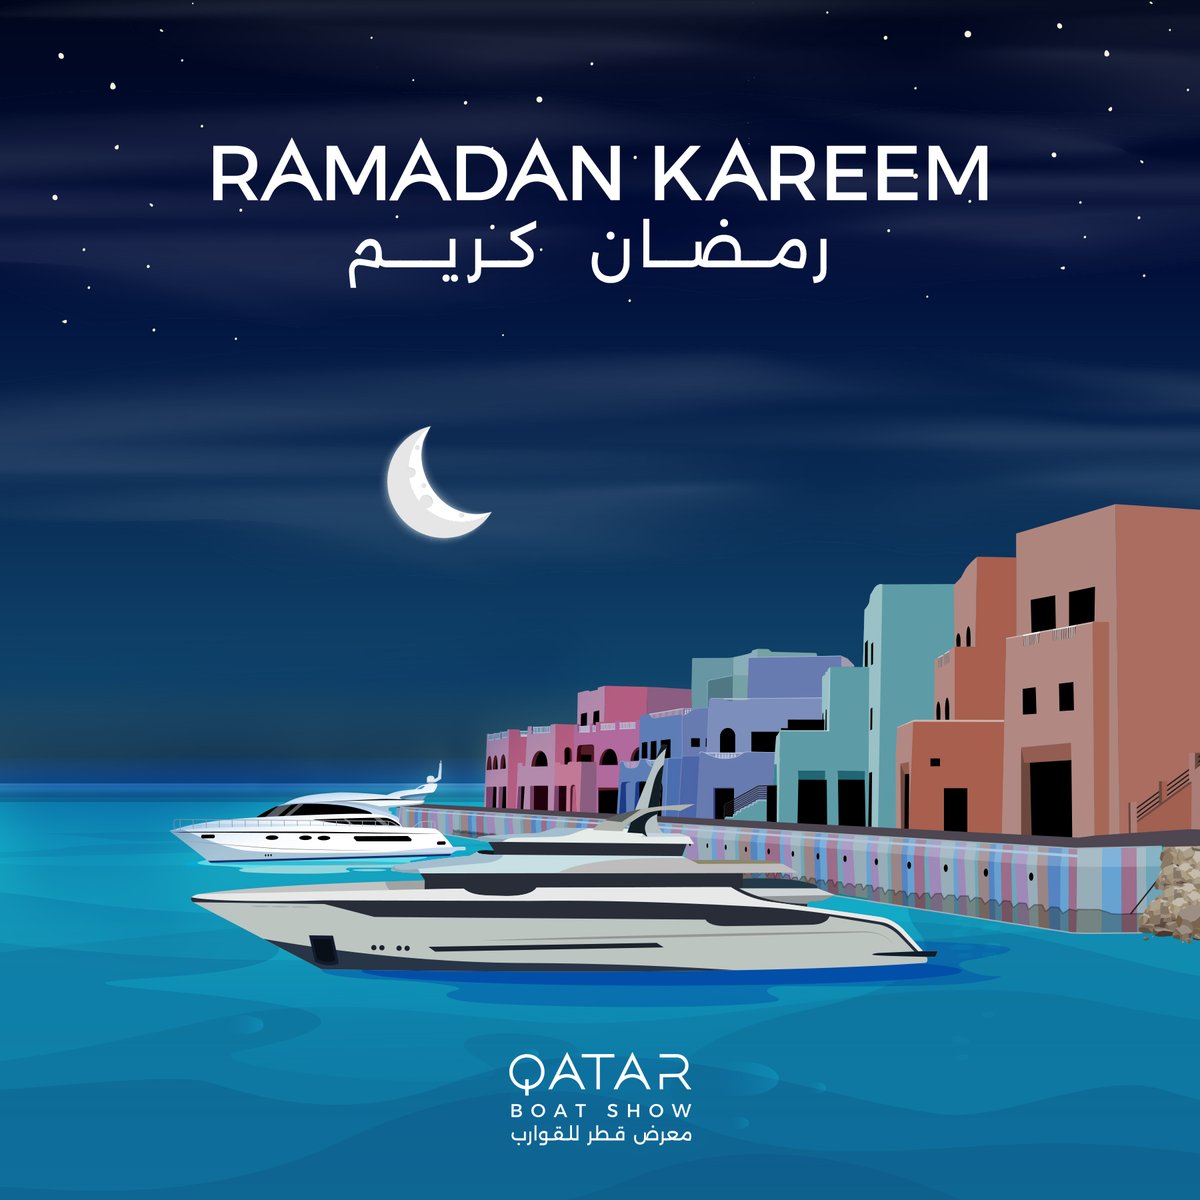 معرض قطر للقوارب يهنئكم بحلول شهر رمضان المبارك، أعاده الله عليكم بالخير والبركات.

Qatar Boat Show wishes you a blessed Ramadan! May this month bring you peace, prosperity, and moments to cherish. #RamadanMubarak! 

#QatarBoatShow2024 #معرض_قطر_للقوارب